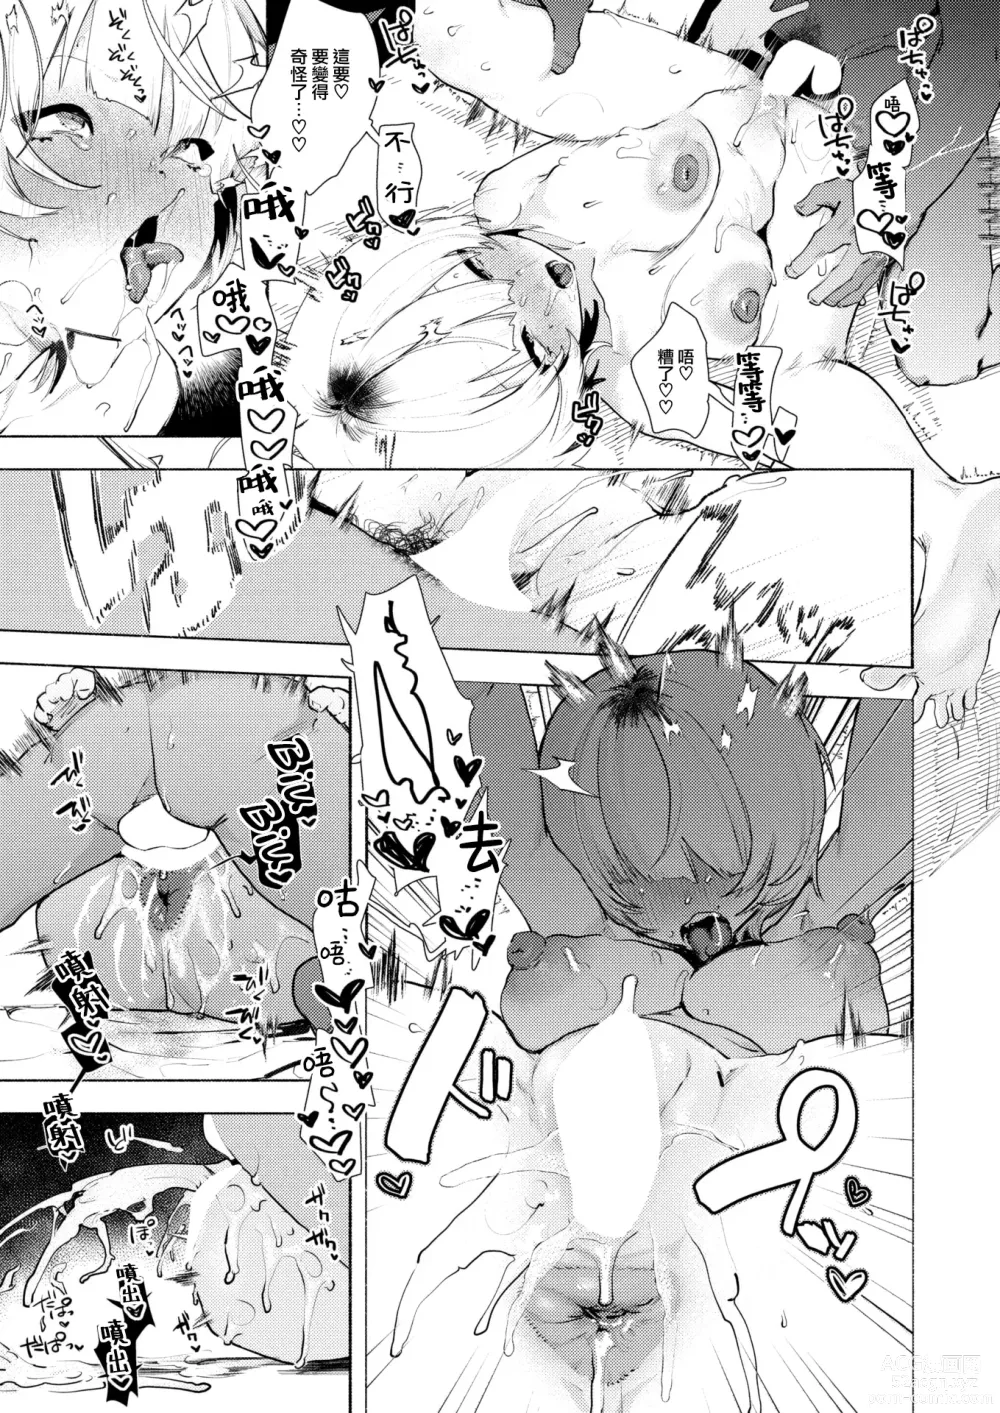 Page 19 of manga Noraneko